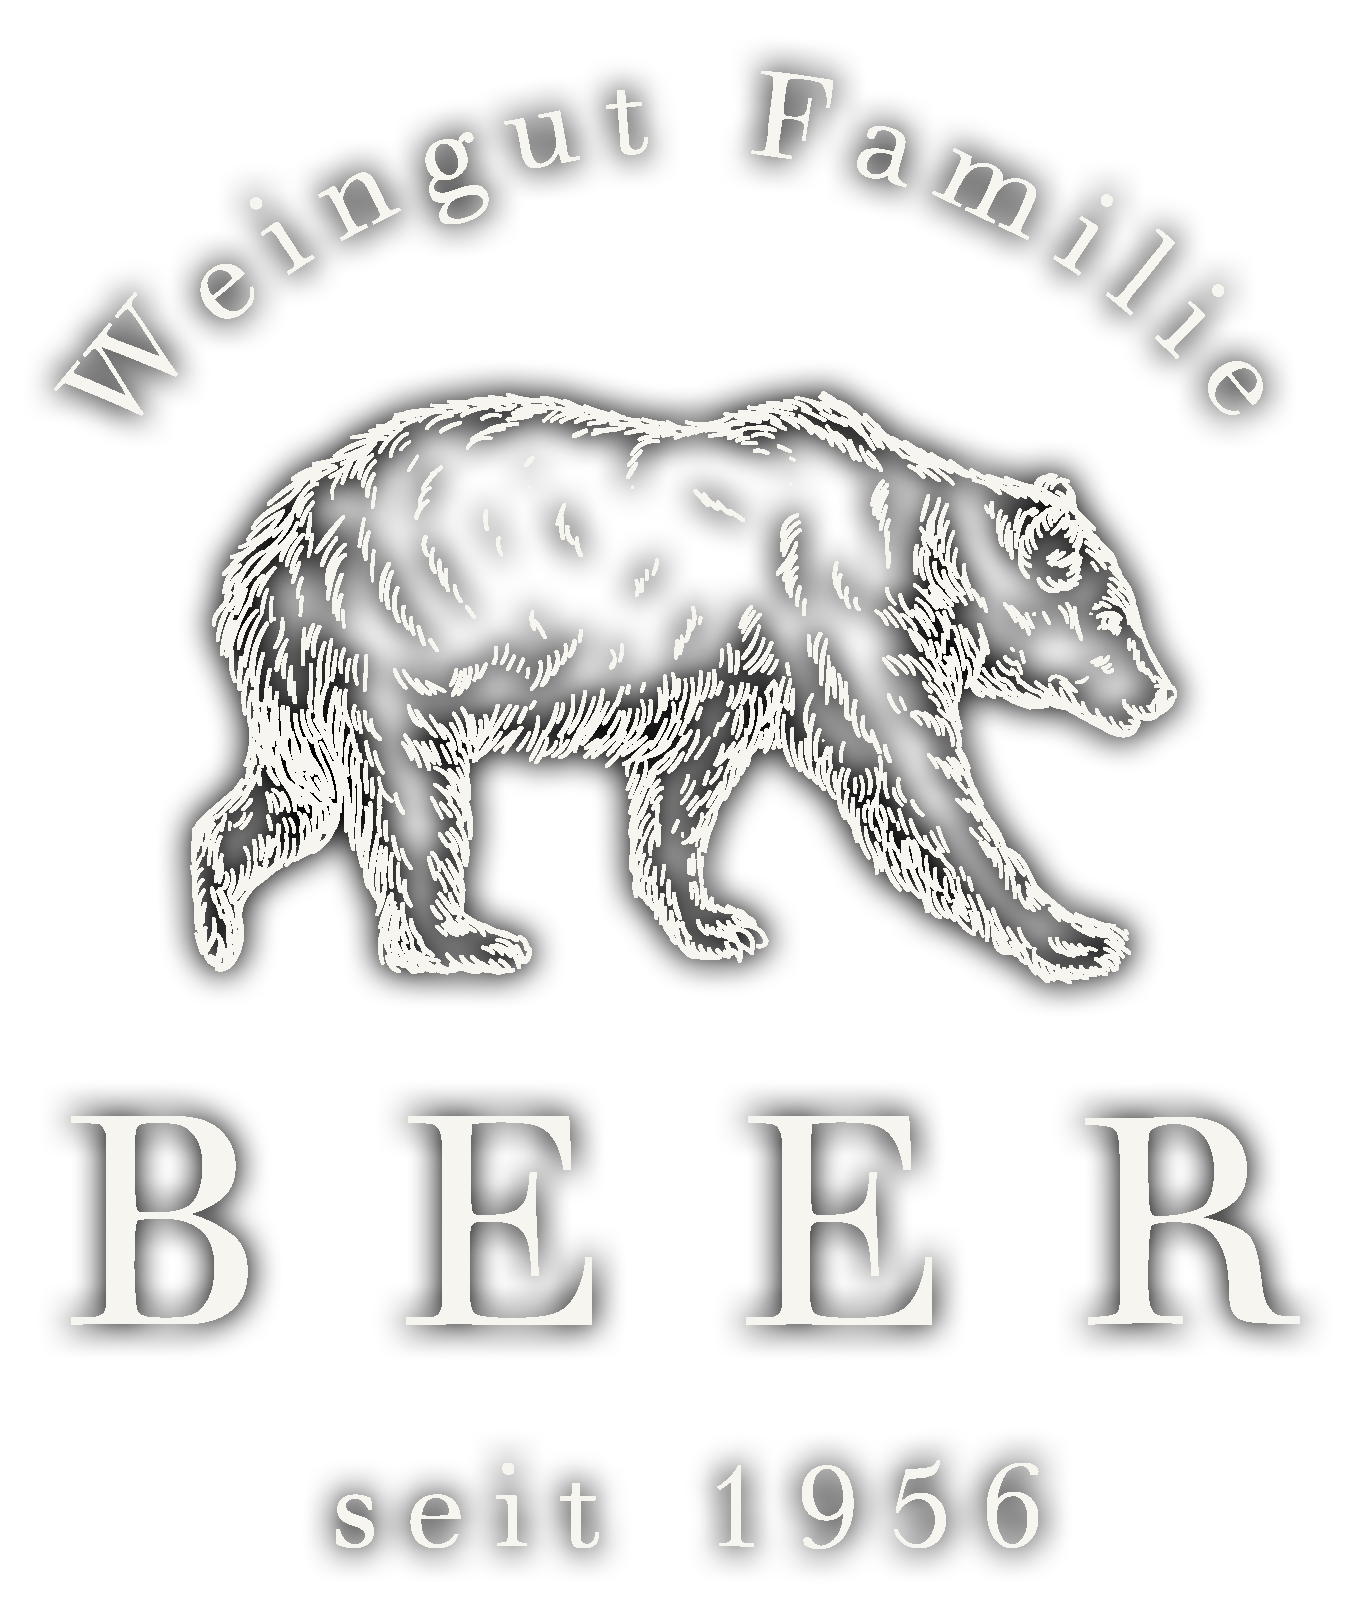 weingut-beer-logo-mobile